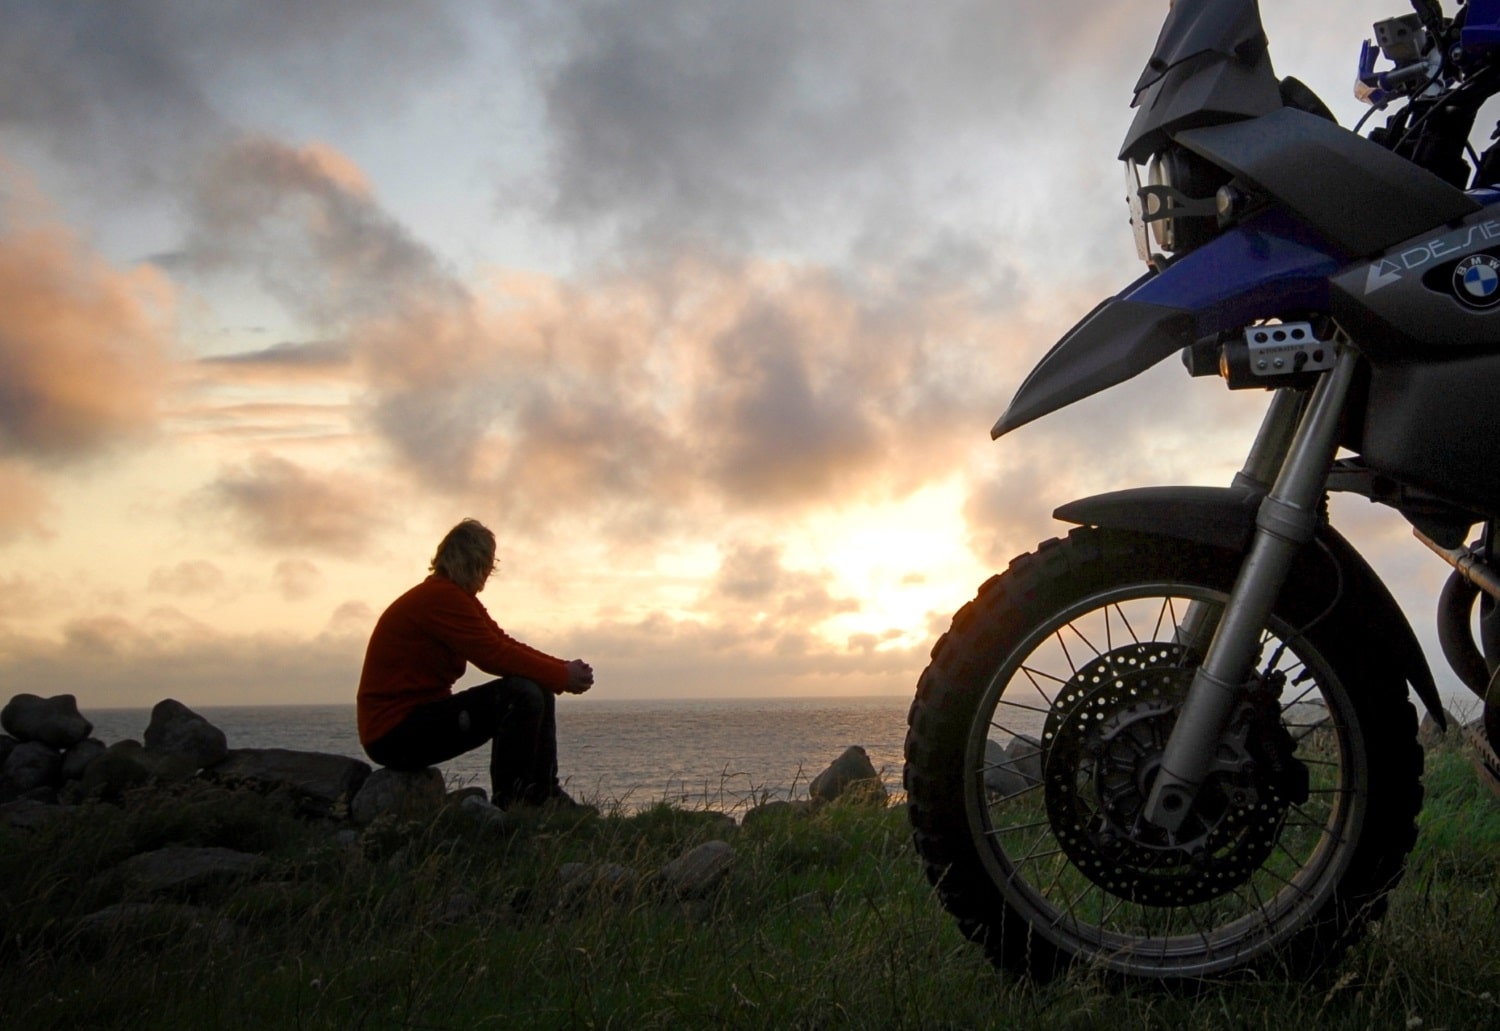 Moto-pneumatici.it chiama a raccolta i motociclisti per la terza “Biker Summer 2015” 1